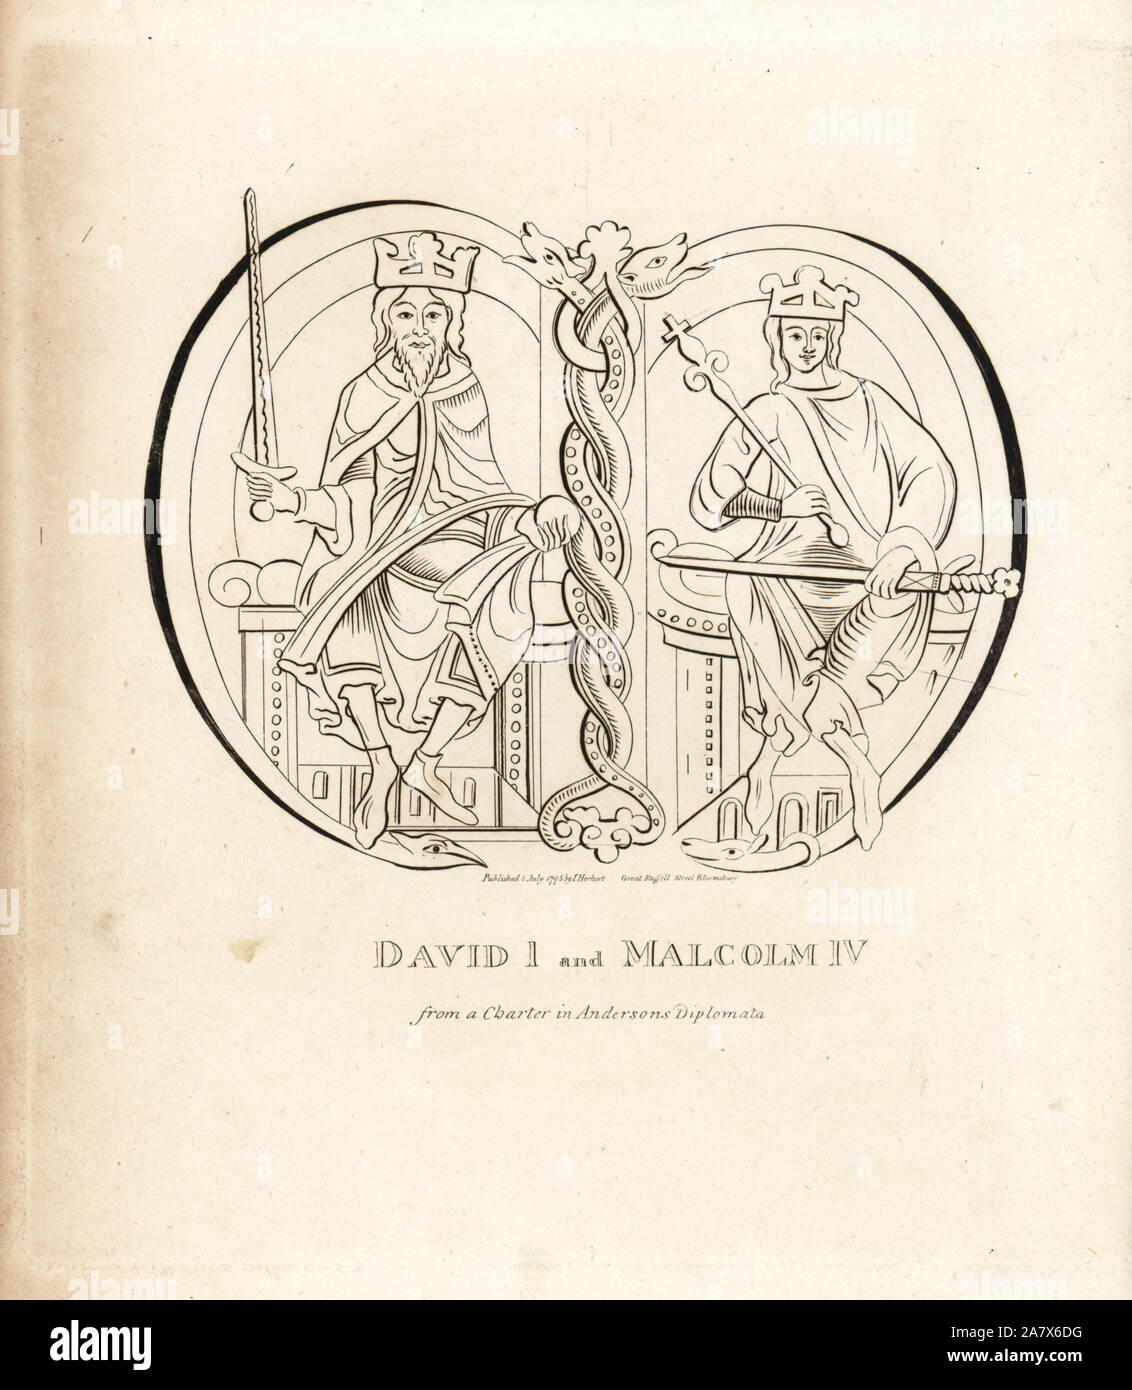 König David I (1084-1153) und König Malcolm IV. von Schottland (1141-1165), aus einer Charter in Andersons Diplomata. Kupferstich von John Pinkerton Iconographia Scotica, oder Porträts von berühmten Personen von Schottland, London, 1797. Stockfoto